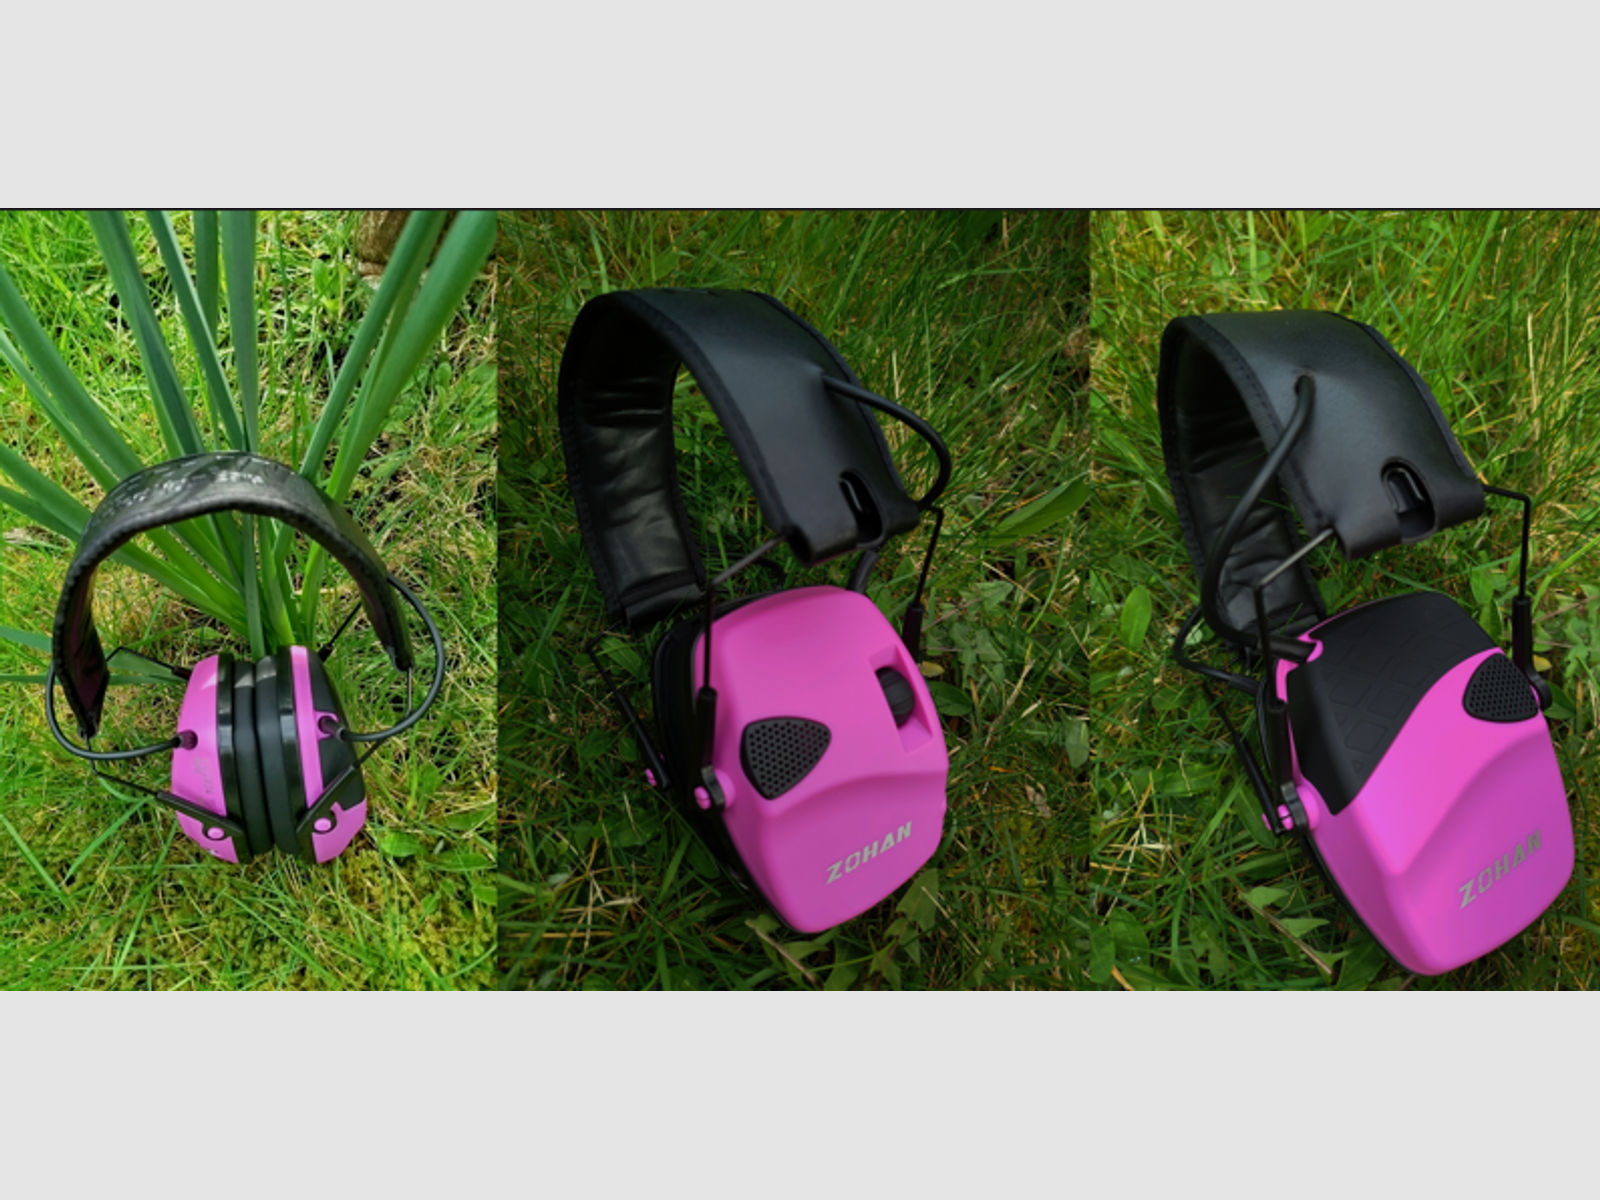 ZOHAN elektronischer Gehörschutz NEU pink ähnlich Howard Leight Impact Sport